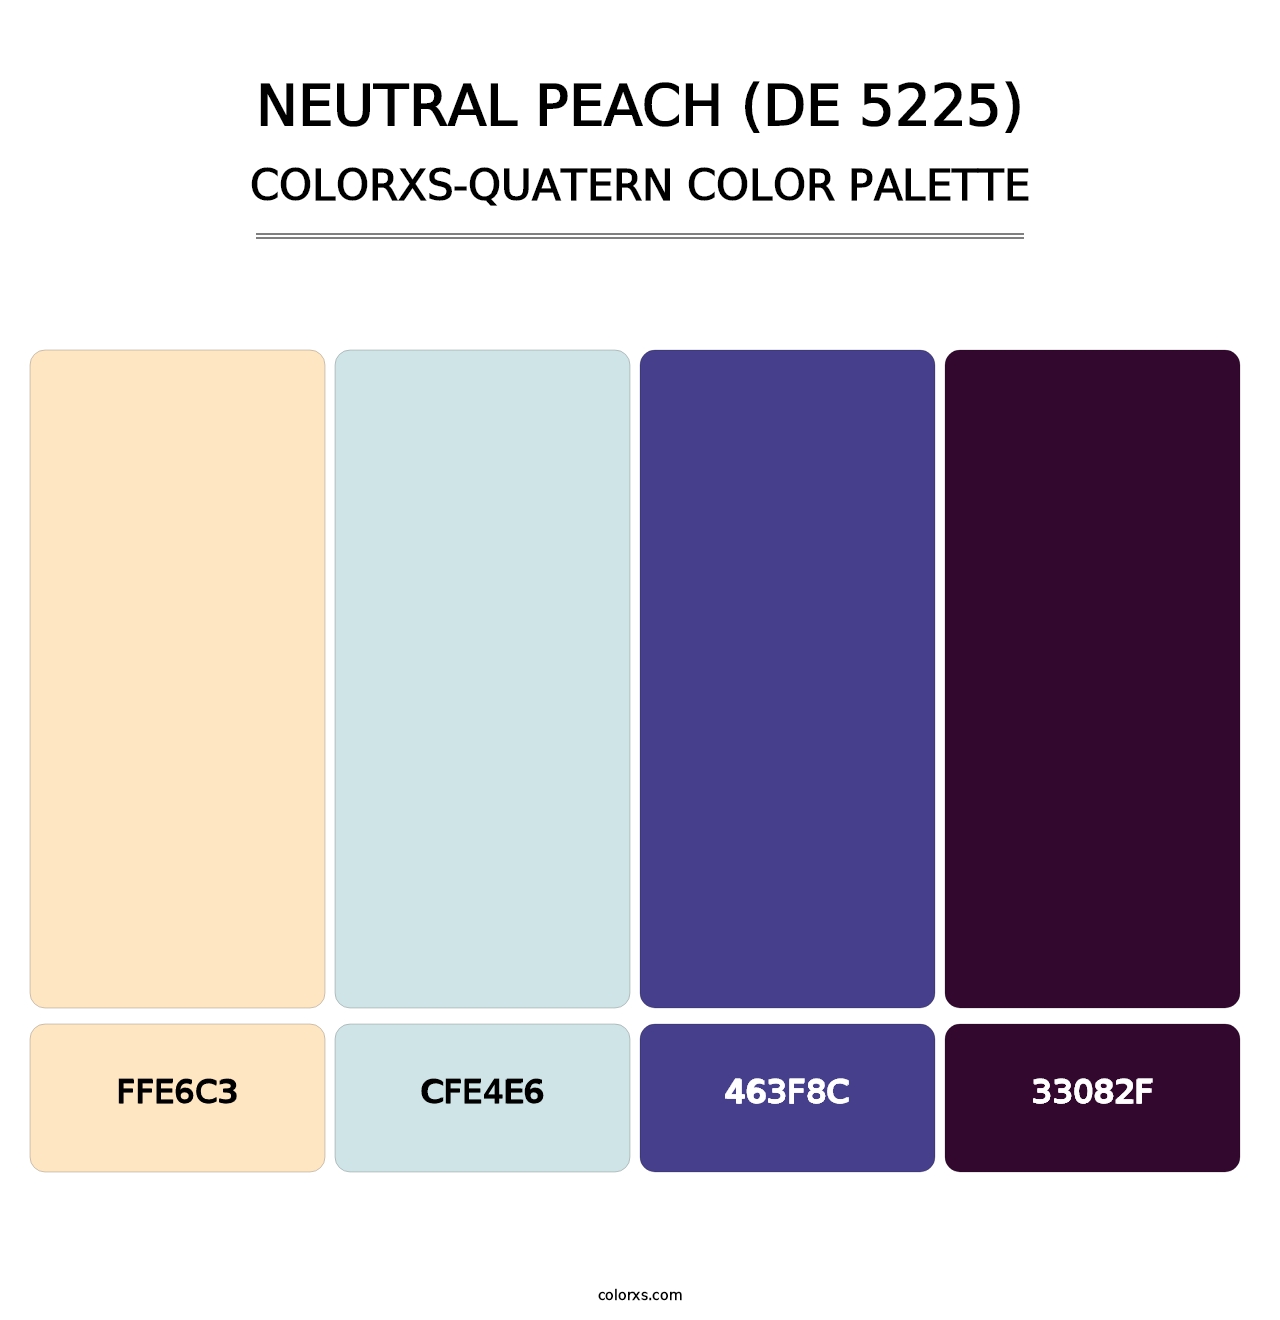 Neutral Peach (DE 5225) - Colorxs Quatern Palette